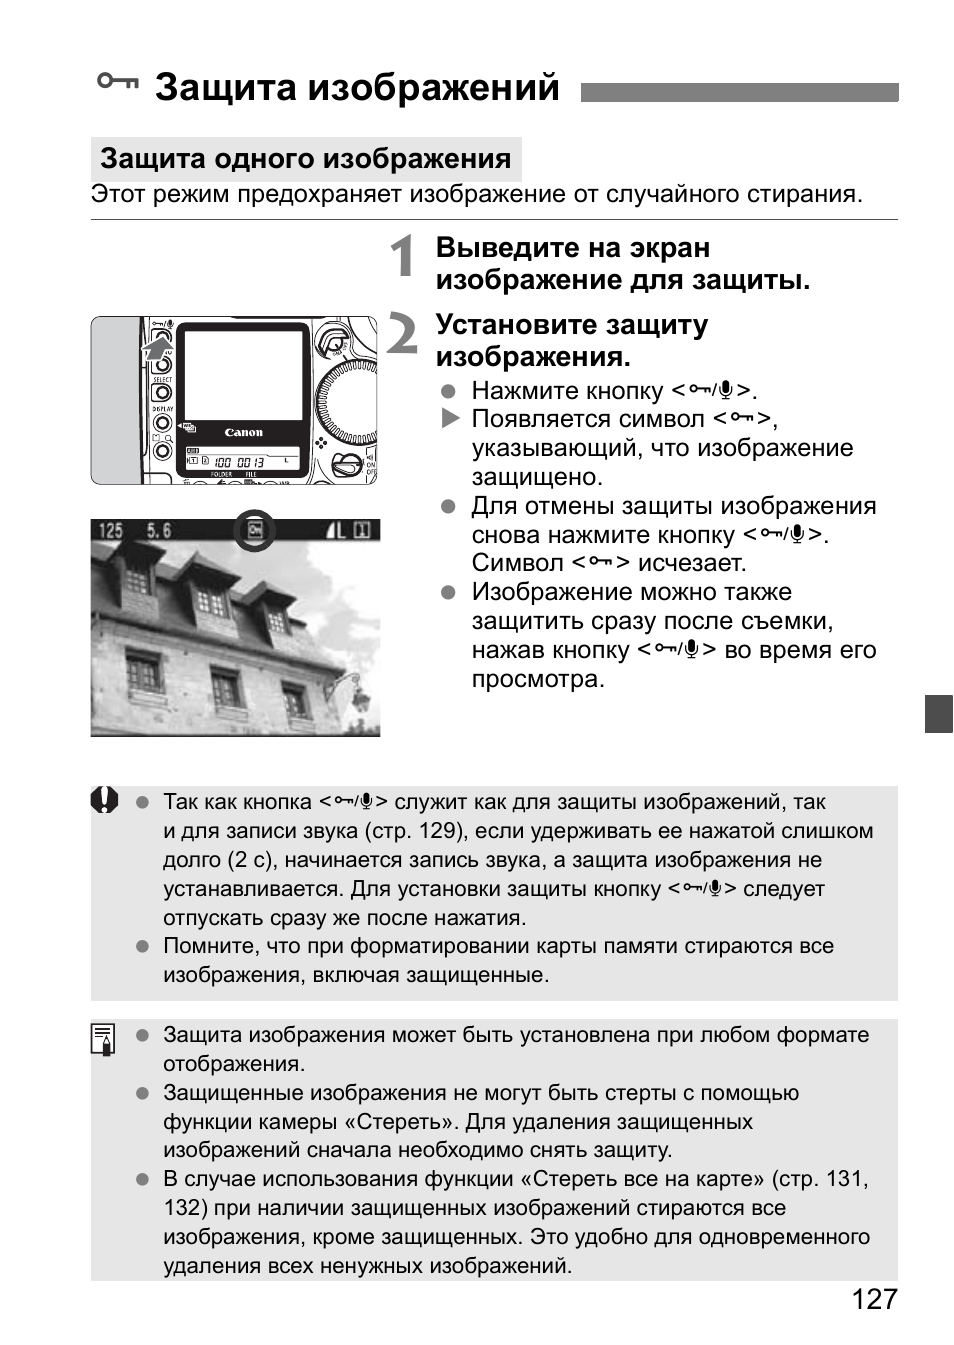 Защита изображения, Защита изображений | Инструкция по эксплуатации Canon EOS 1D Mark II N | Страница 127 / 196